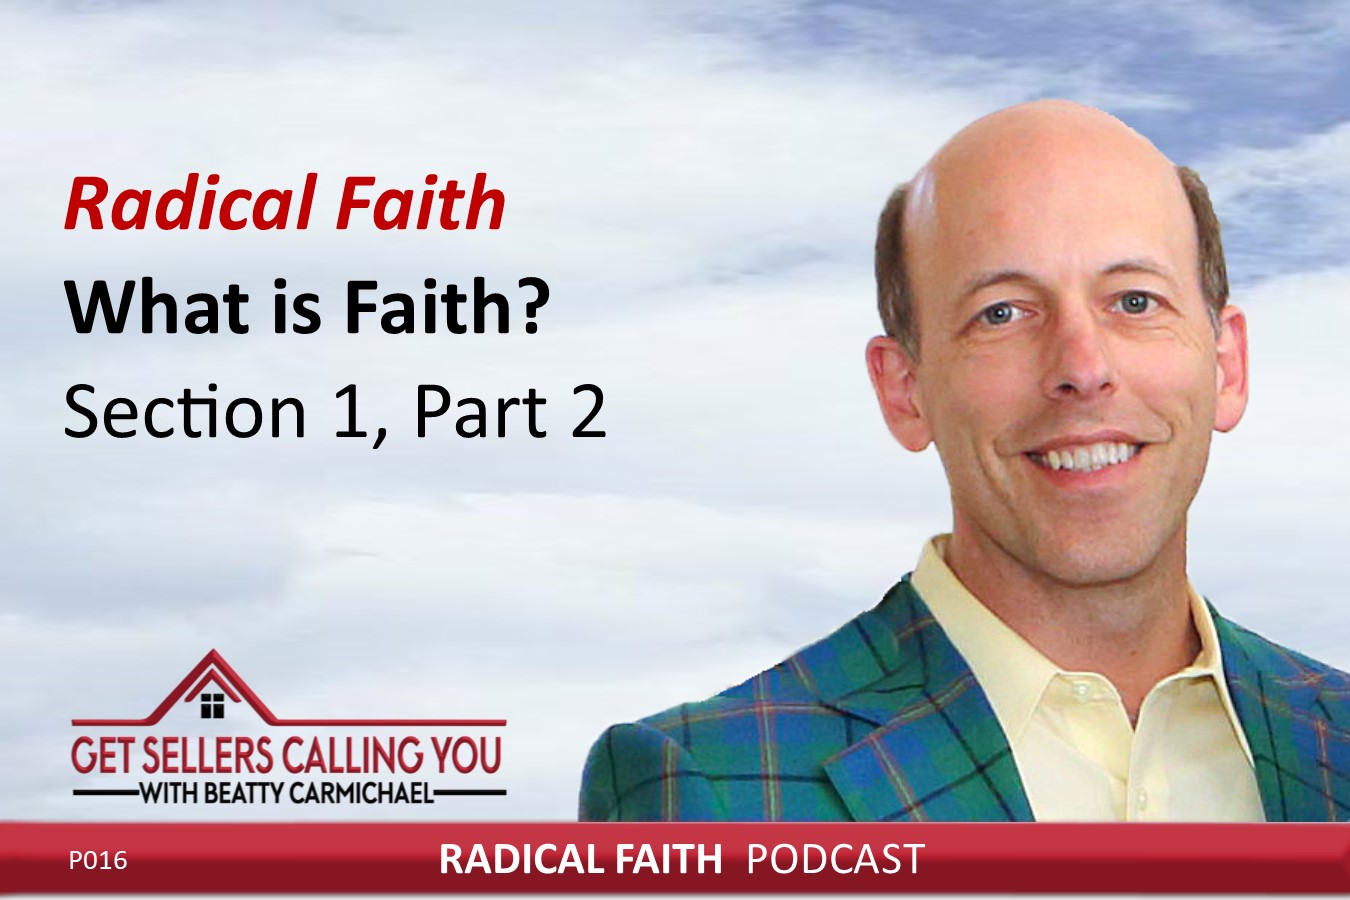 Radical Faith